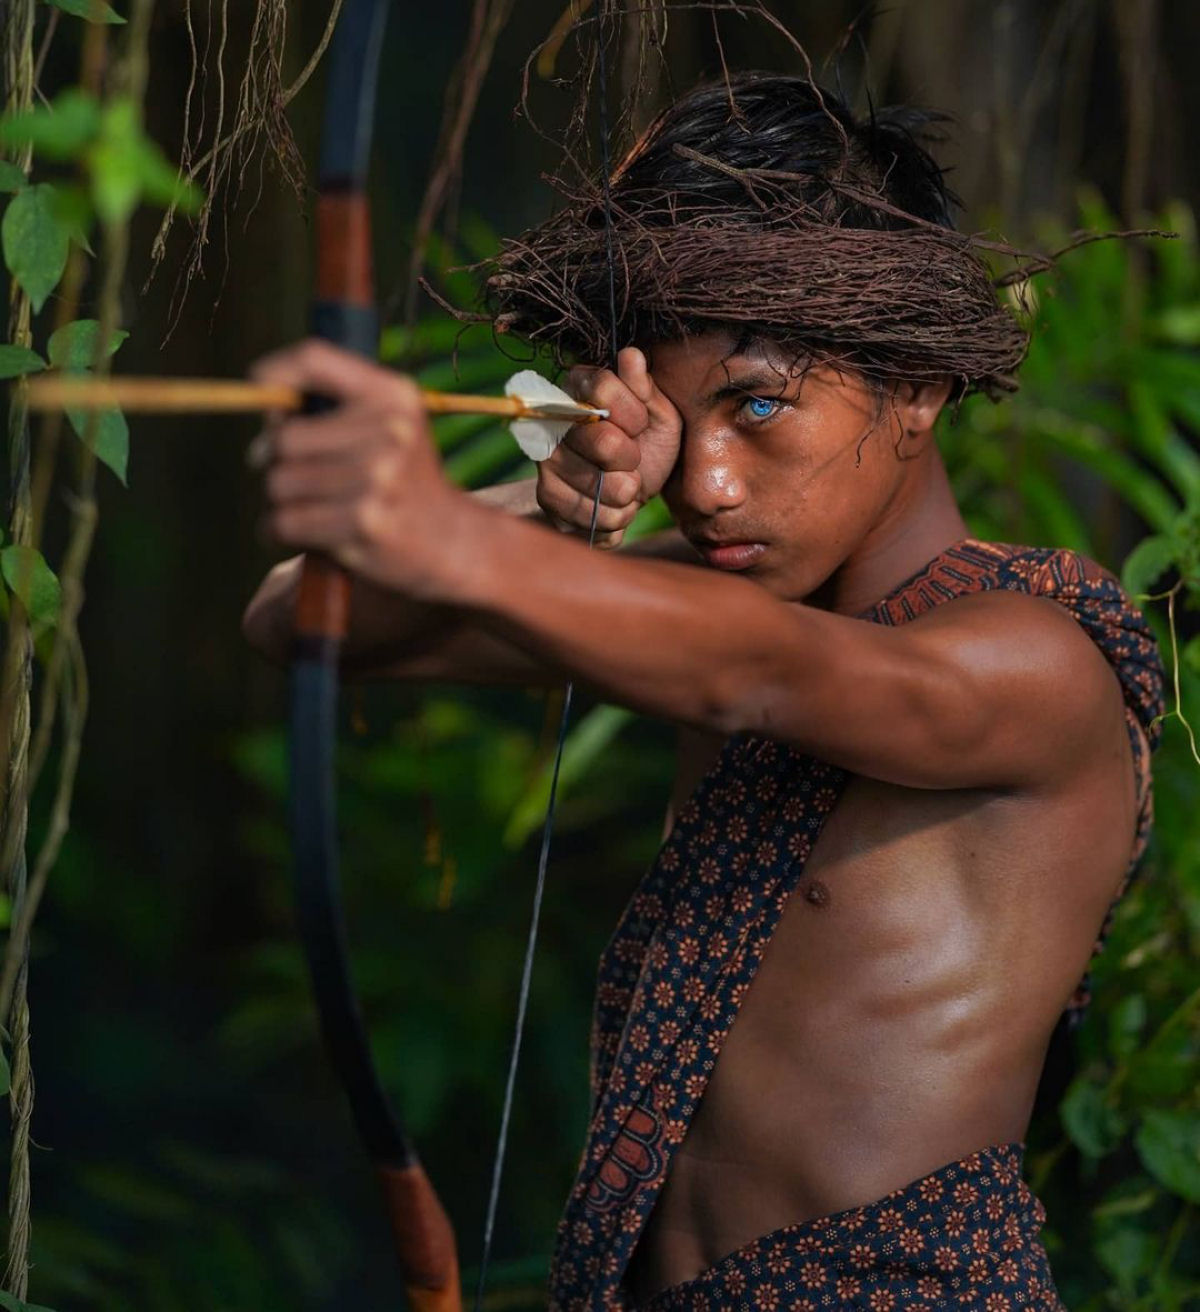 Olhos azuis e brilhantes: as hipnotizantes fotos de uma tribo com uma rara mutação genética 02